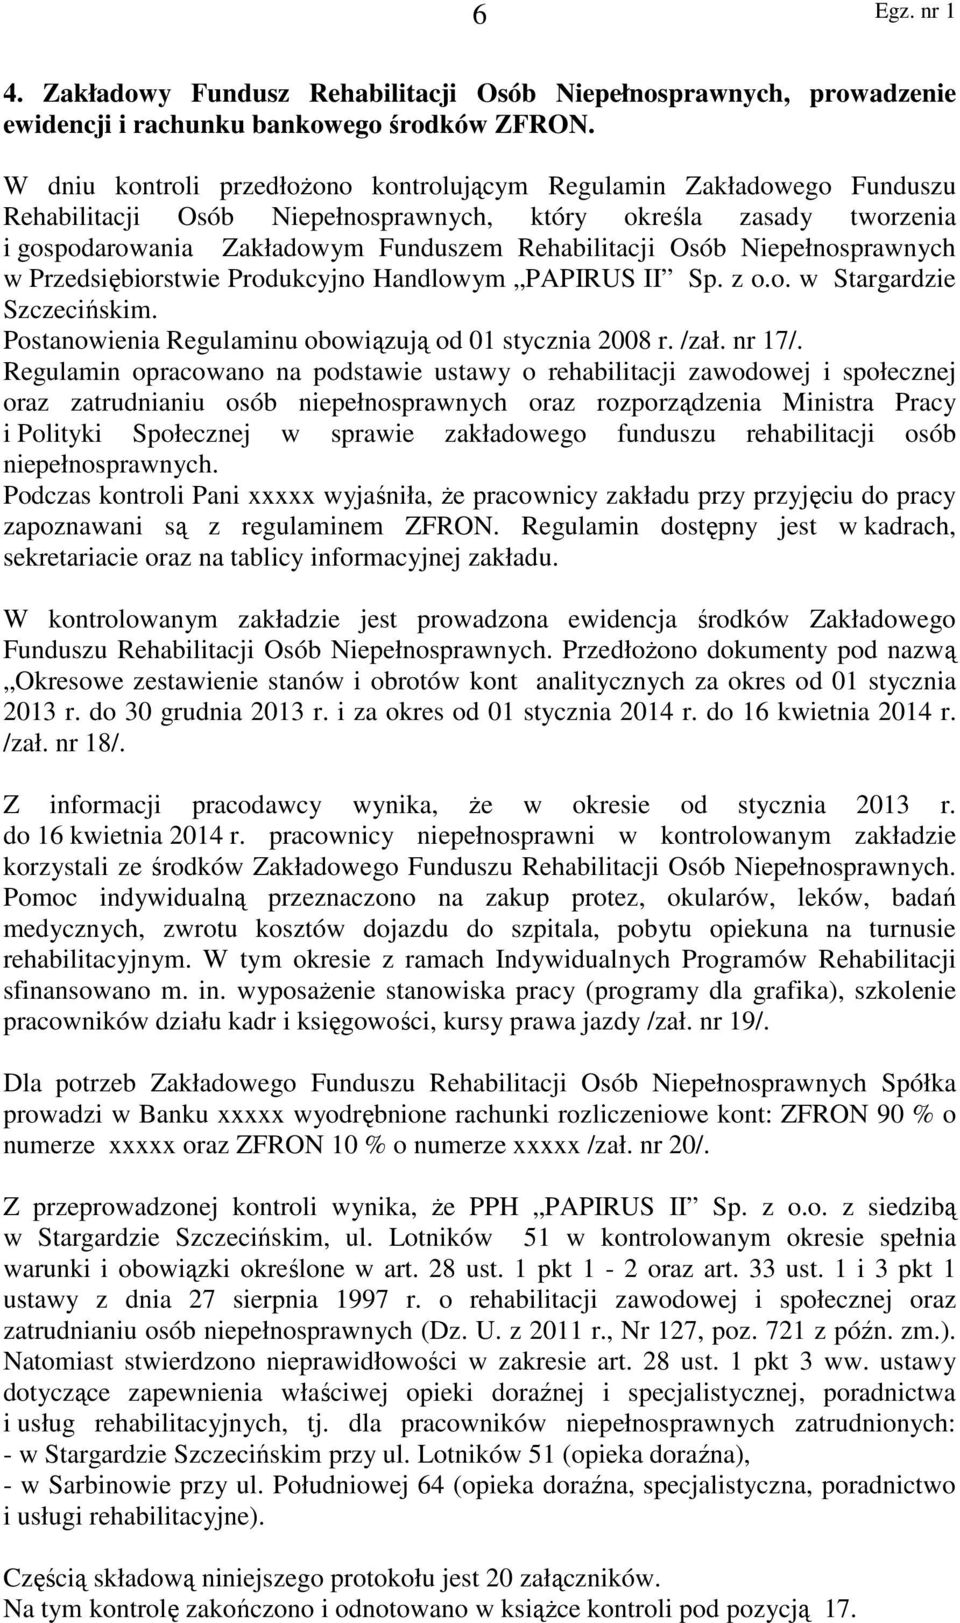 Niepełnosprawnych w Przedsiębiorstwie Produkcyjno Handlowym PAPIRUS II Sp. z o.o. w Stargardzie Szczecińskim. Postanowienia Regulaminu obowiązują od 01 stycznia 2008 r. /zał. nr 17/.